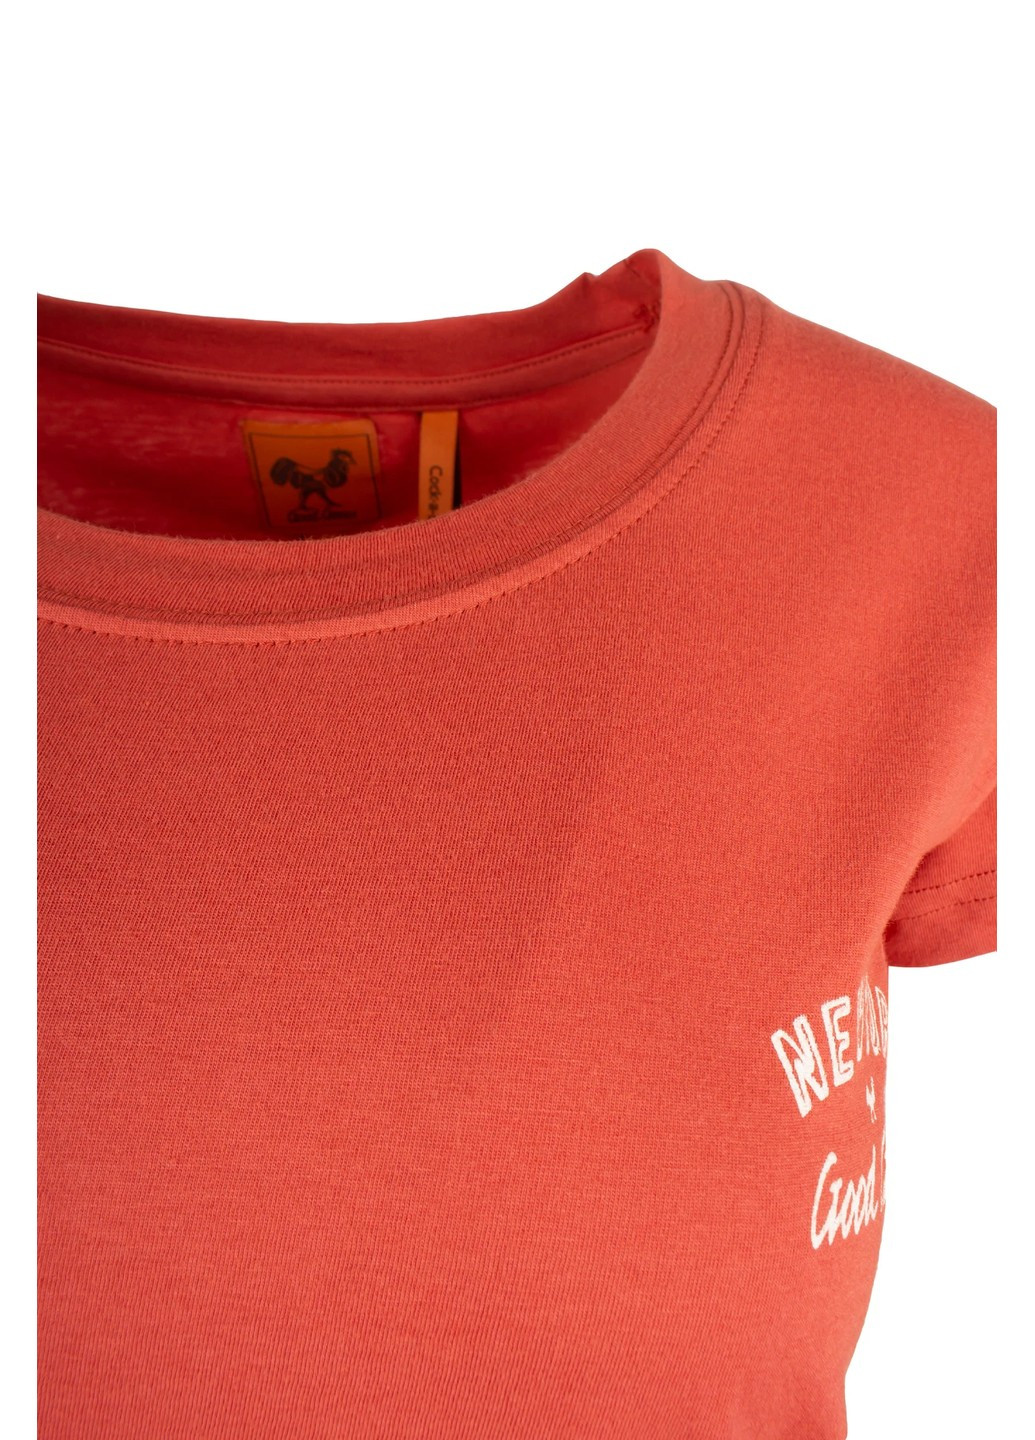 Оранжевая летняя футболка женская Good Genes